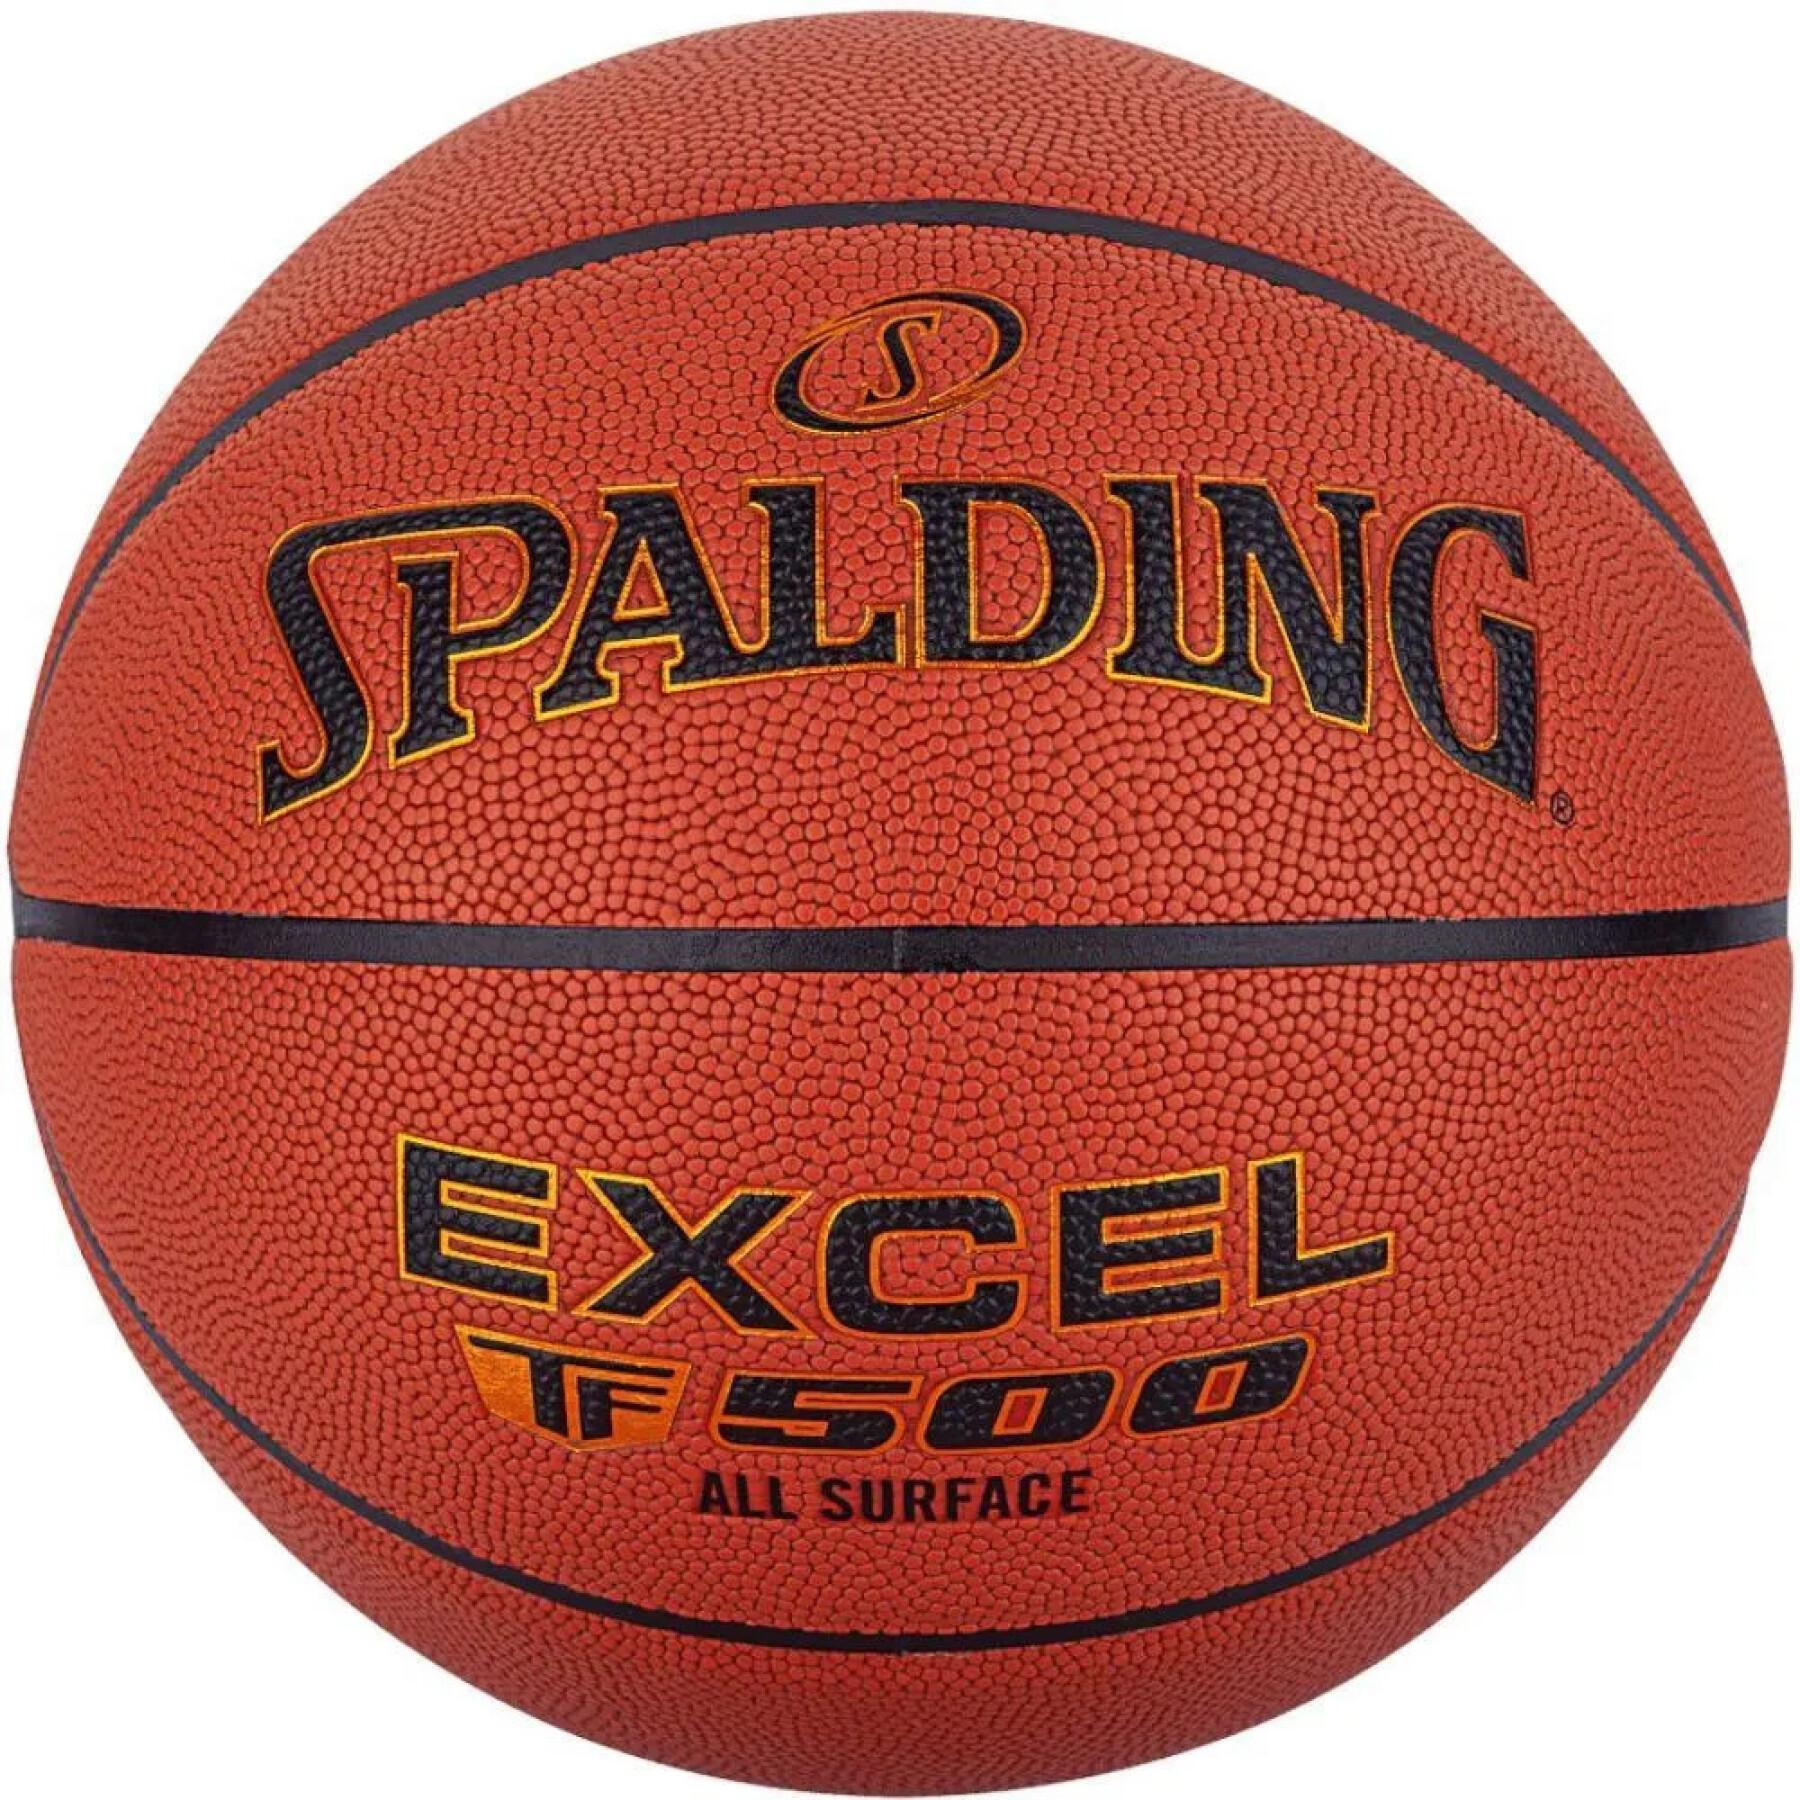 Balón Spalding Excel TF-500 Composite